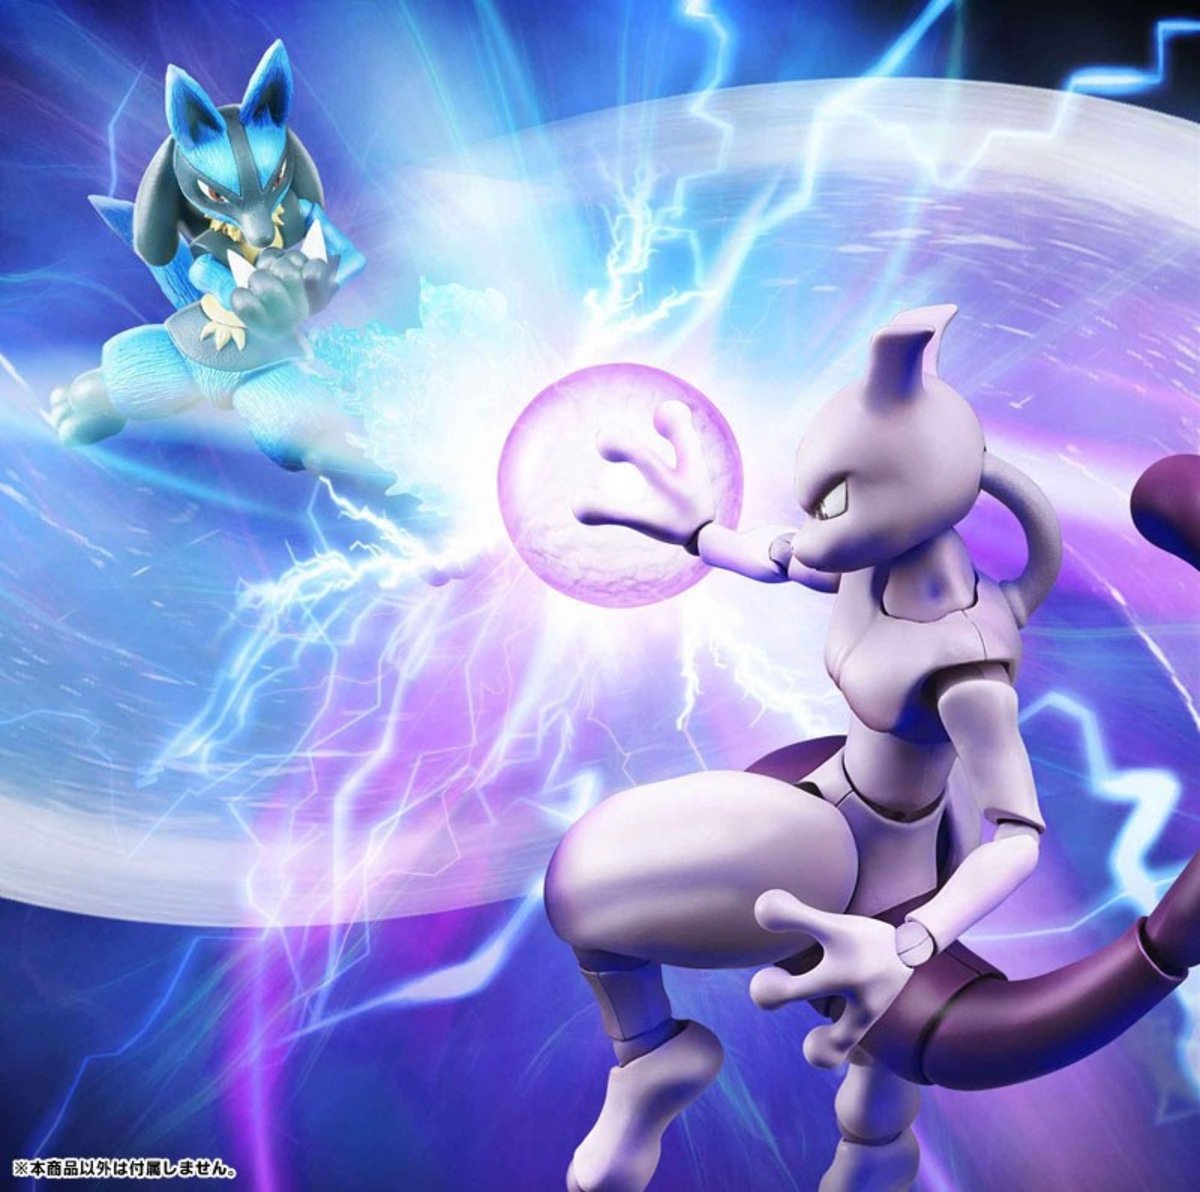 Pokémon pone a la venta dos nuevos pack de impresionantes figuras sólo en el territorio japonés